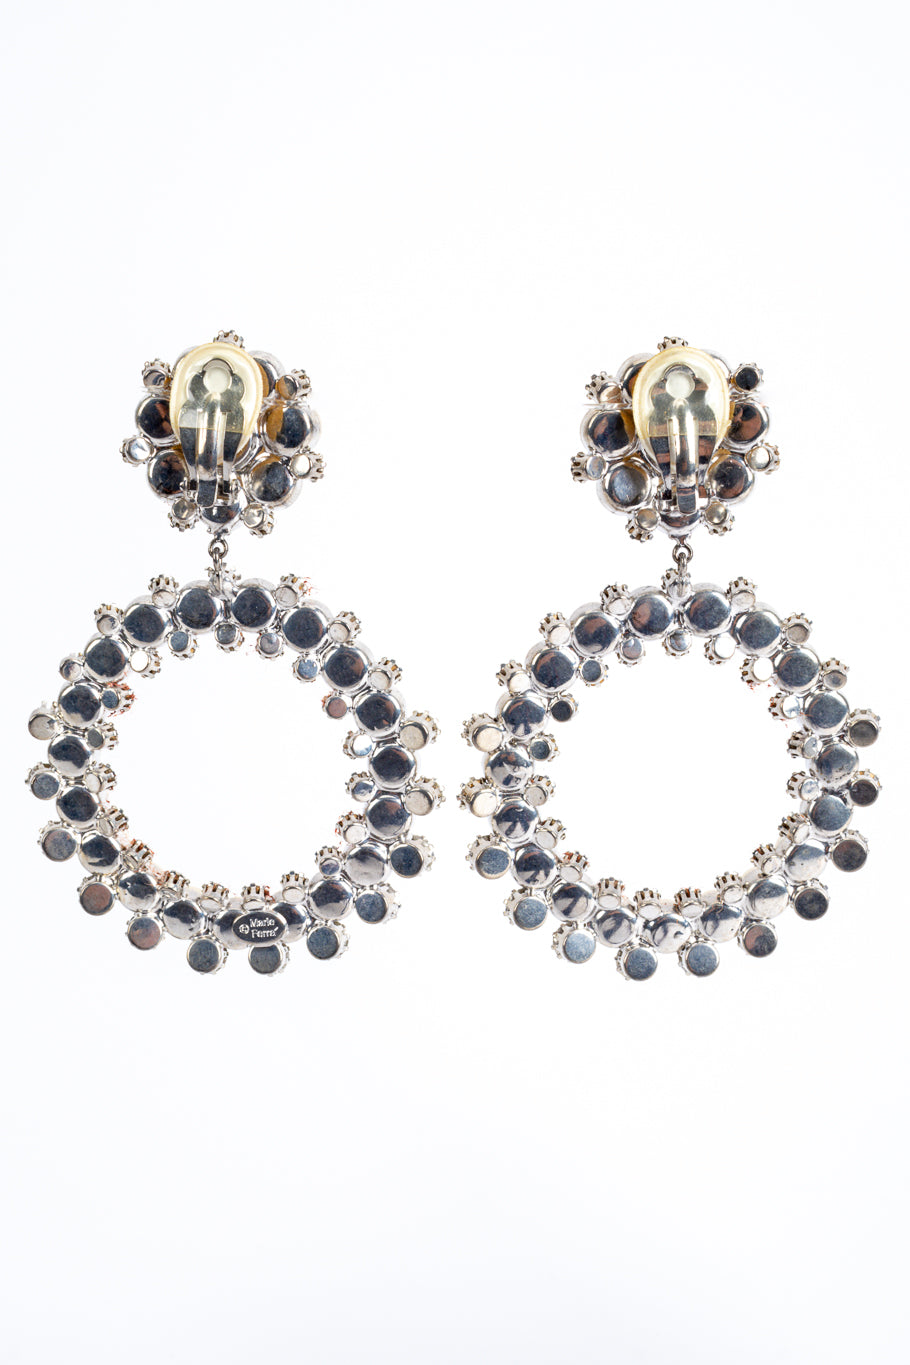 Vintage pearl and rhinestone hoop earrings by Marie Ferrá backs @recessla